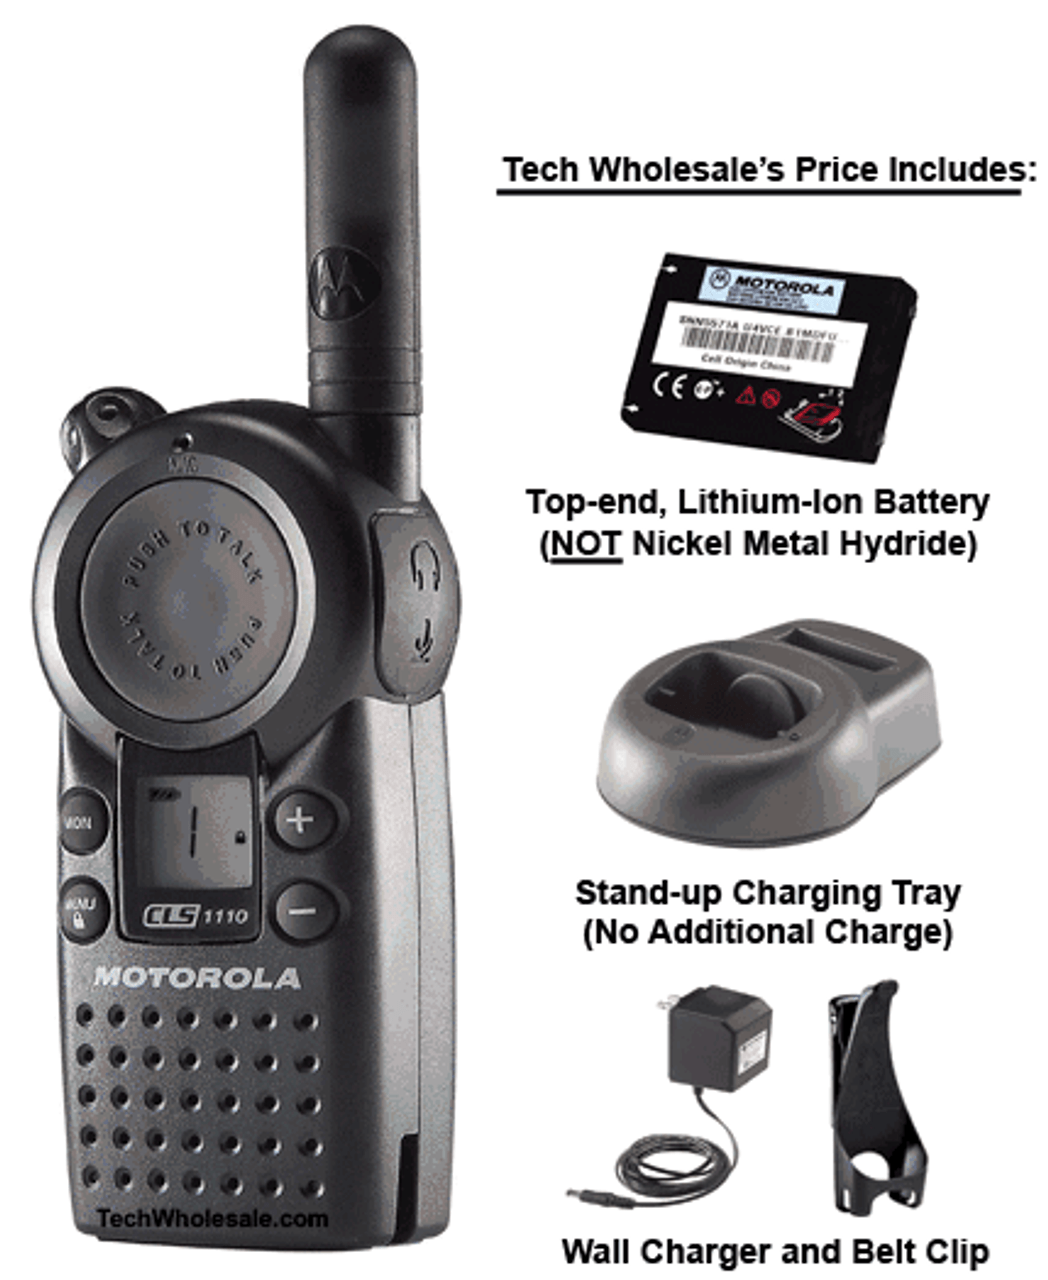 Motorola CLS1110 Walkie Talkie Tech Wholesale